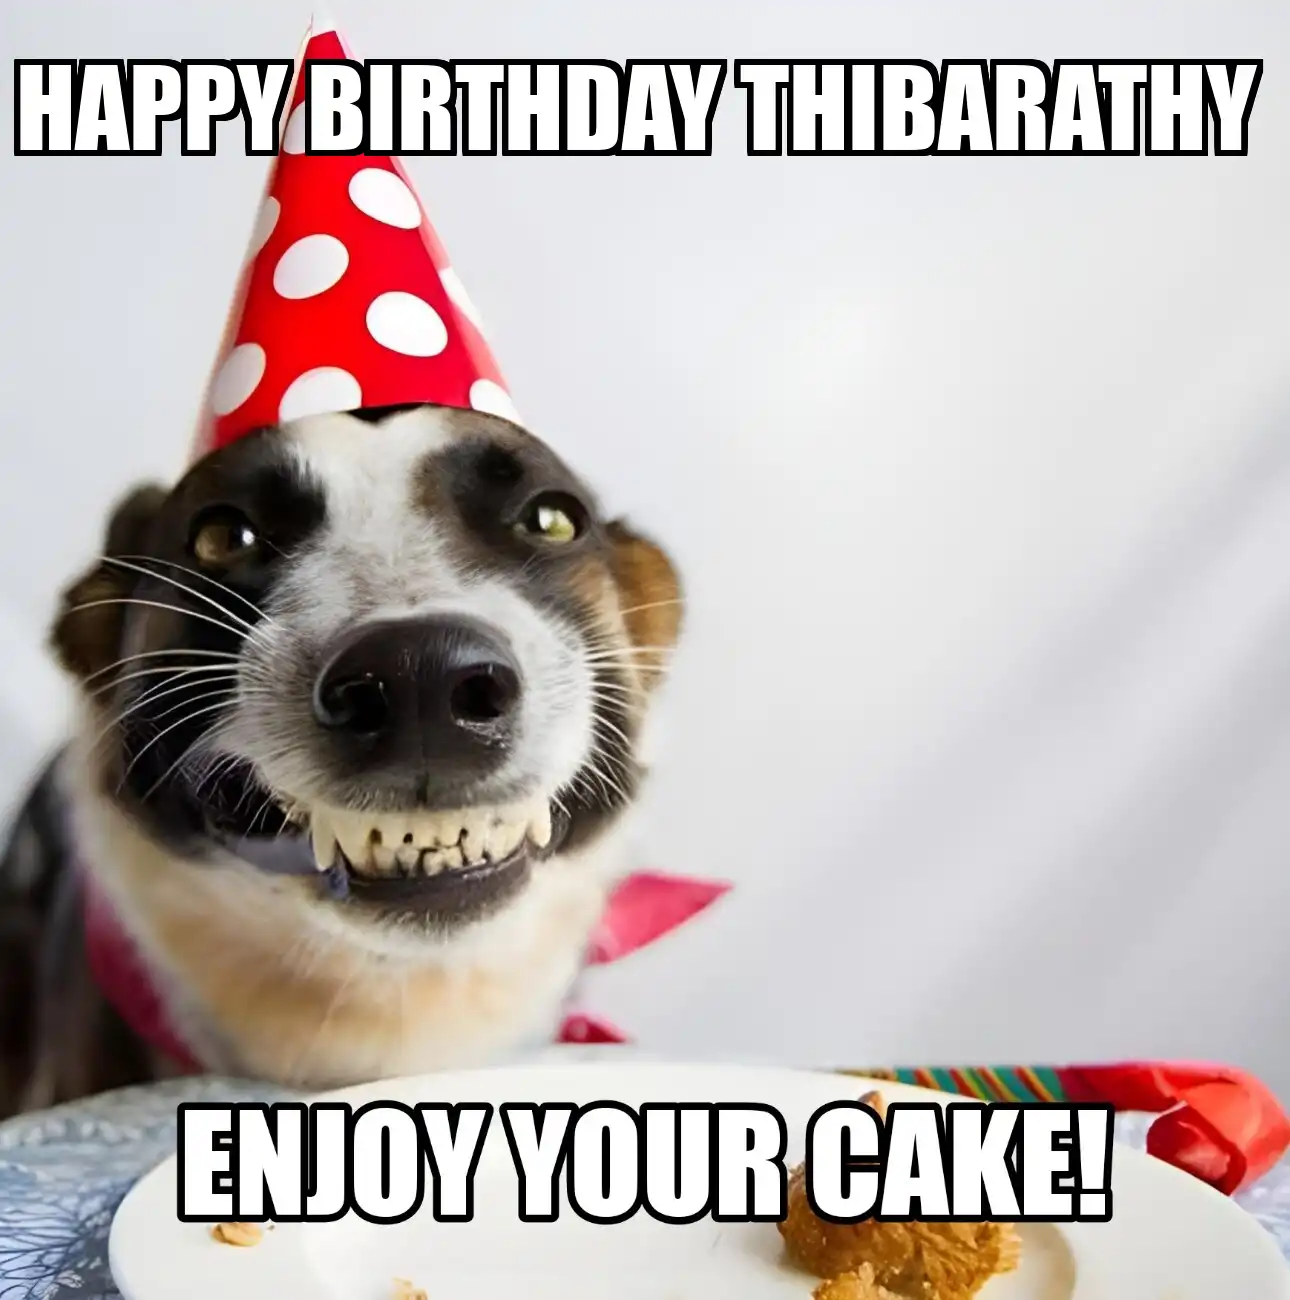 Happy Birthday Thibarathy Enjoy Your Cake Dog Meme